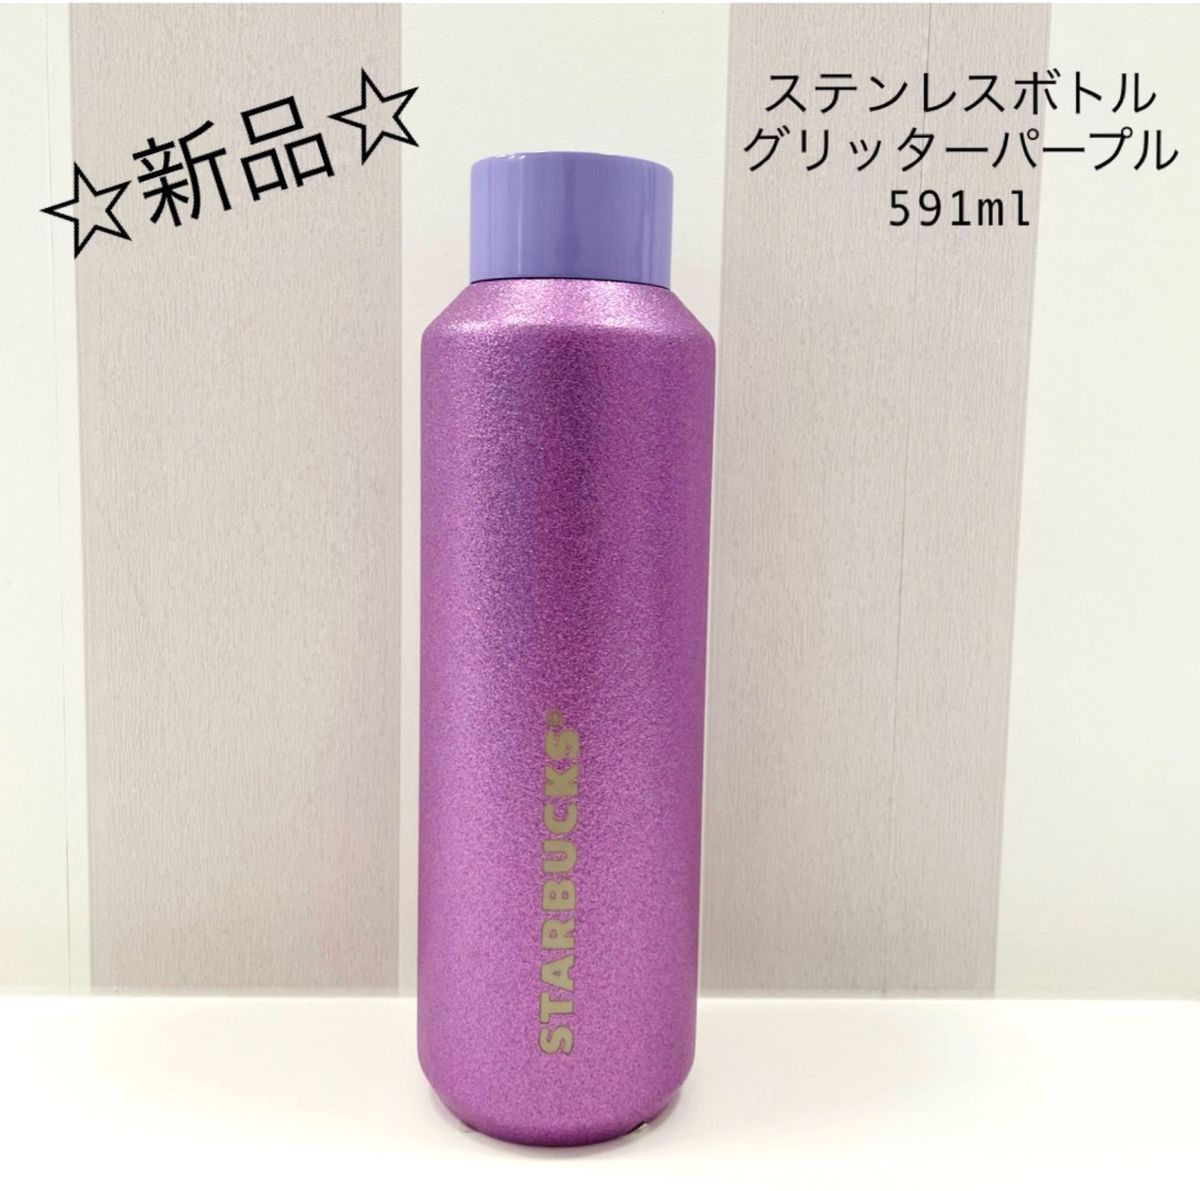 新品 スターバックス ステンレスボトルグリッターパープル591ml 紫 